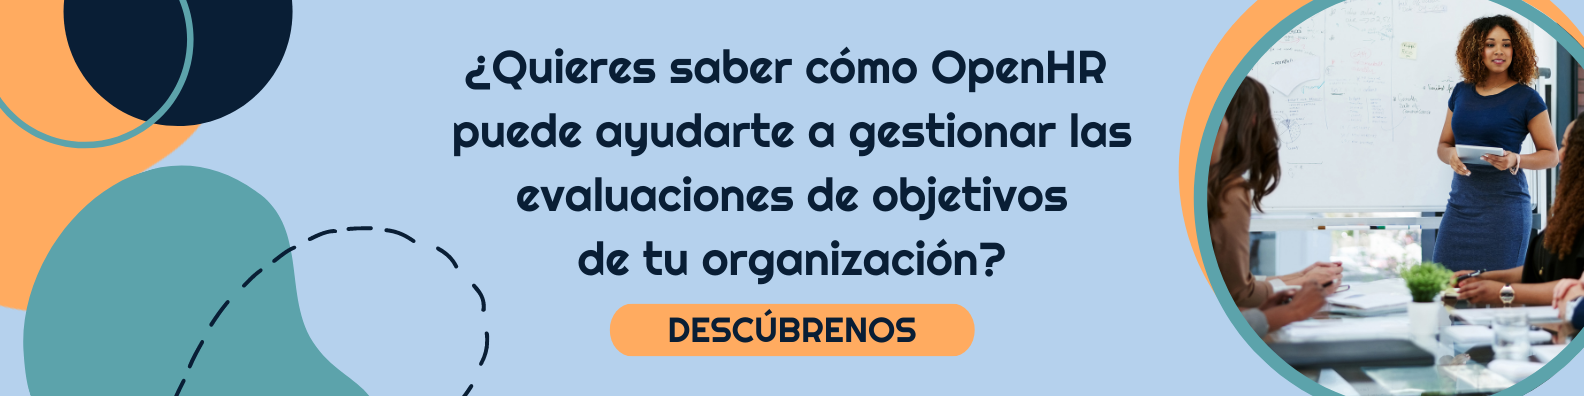 ¿Quieres saber cómo OpenHR puede ayudarte a gestionar las evaluaciones de objetivos de tu organización-1